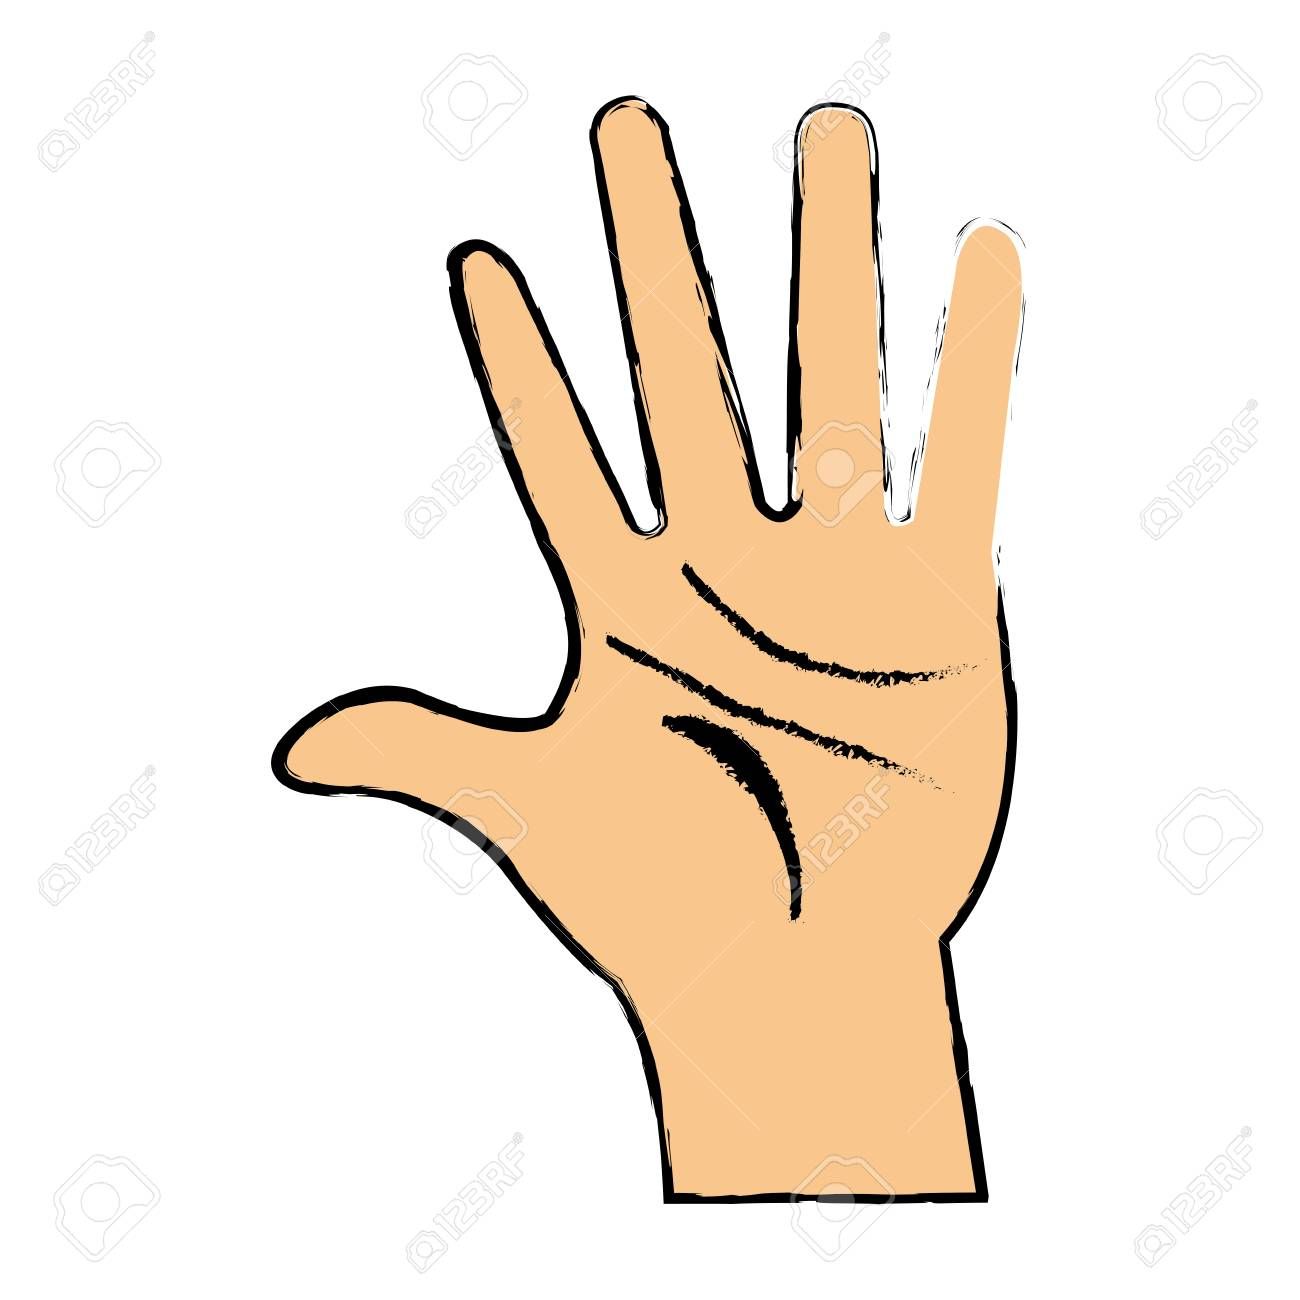 Adult hand signals